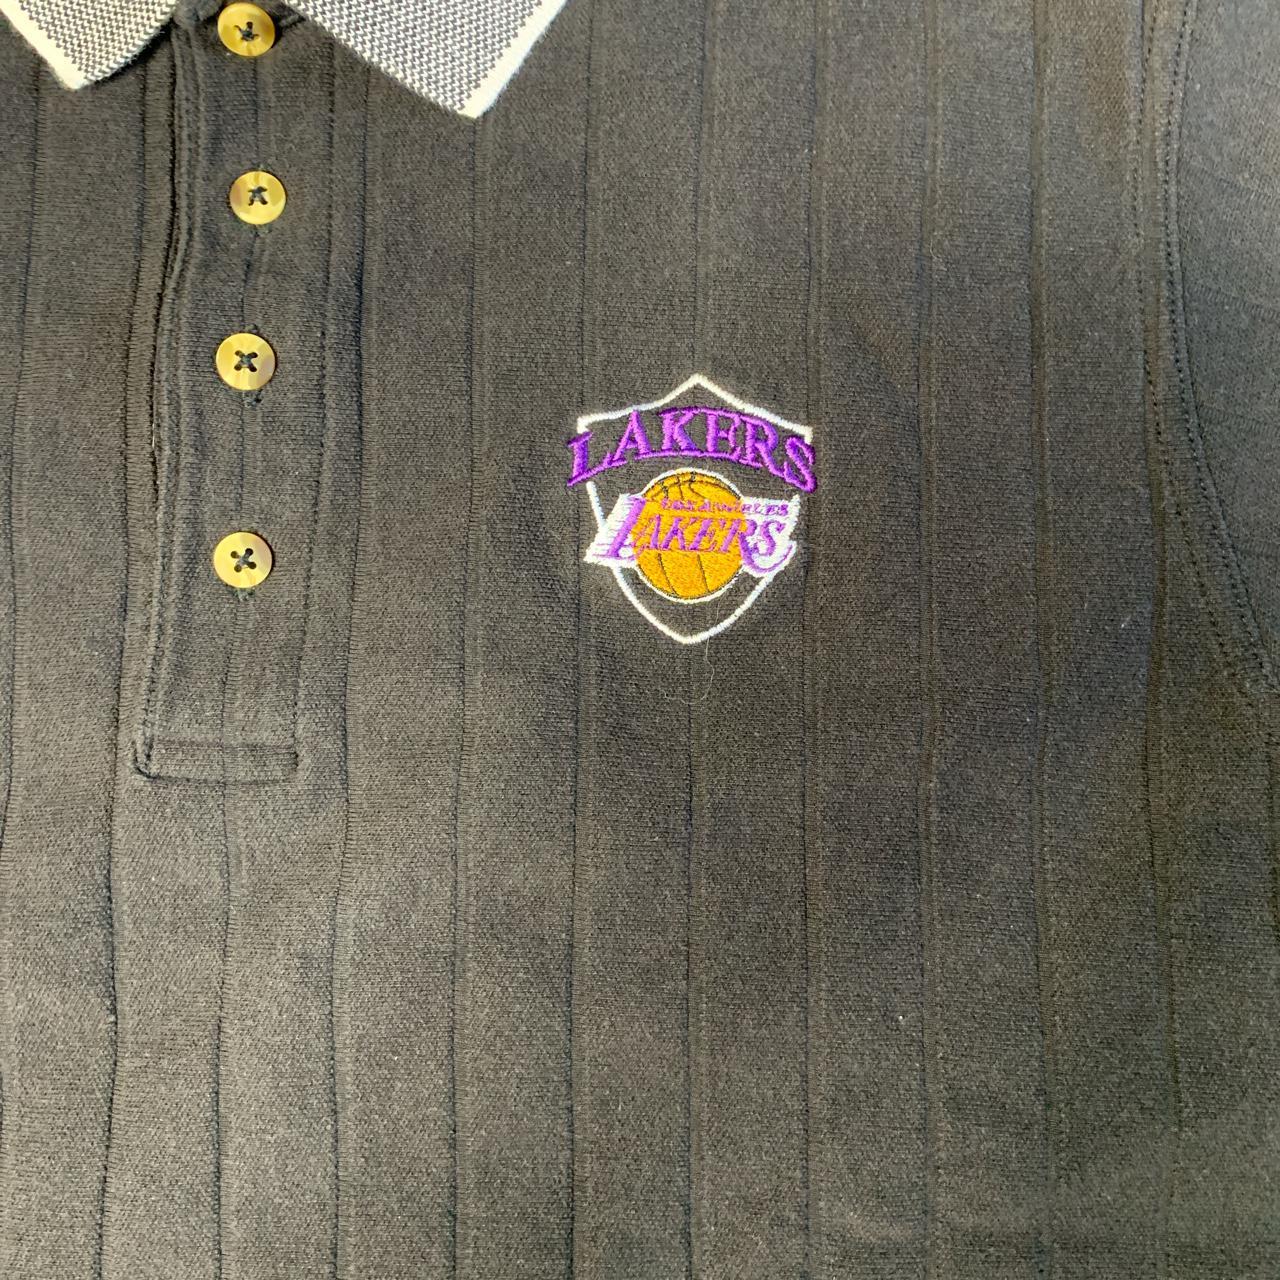 Lakers polo shirt • Ribbed materal • Grey collar and - Depop